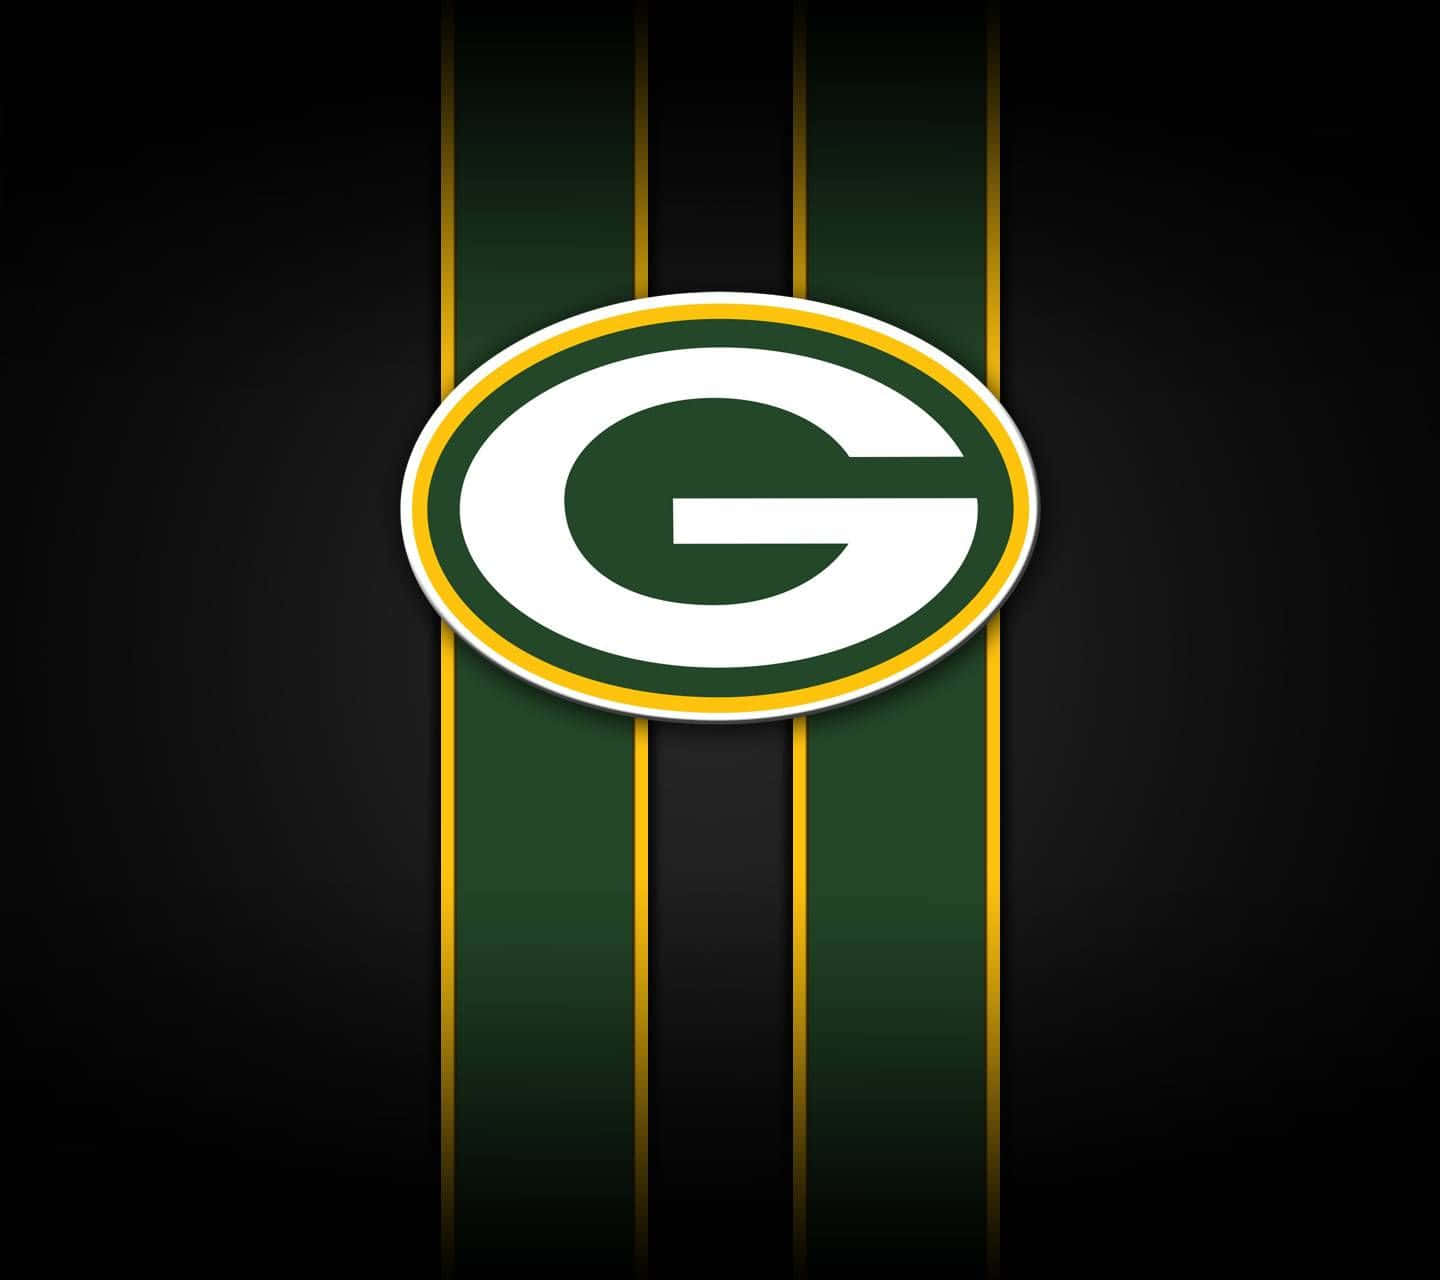 Hintergrundbildder Green Bay Packers Mit Einer Auflösung Von 1440 X 1280.